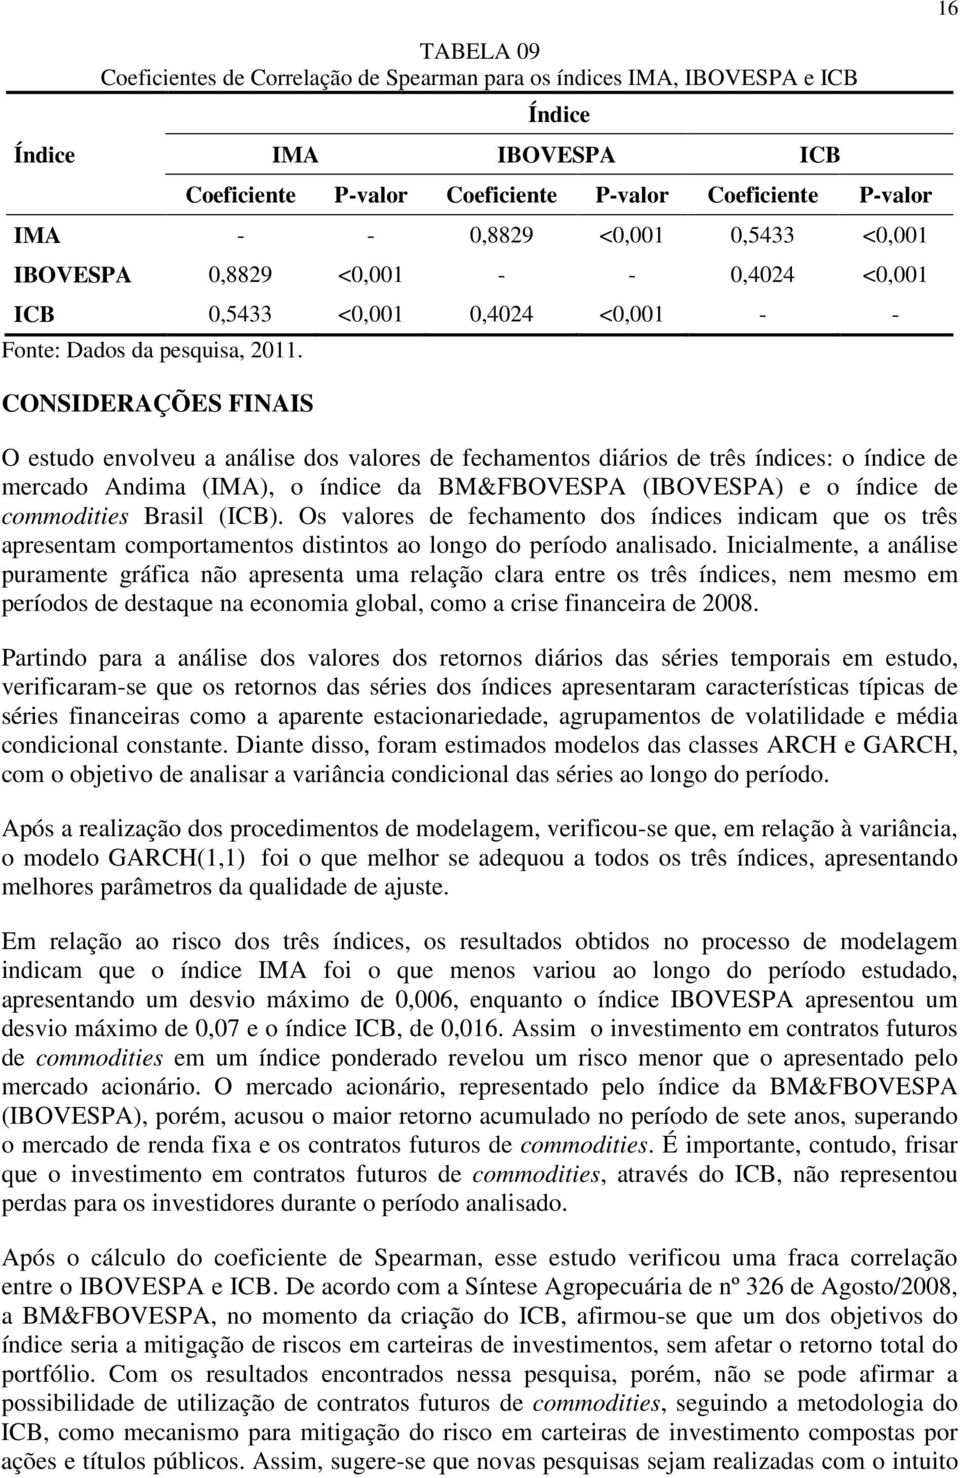 CONSIDERAÇÕES FINAIS O esudo envolveu a análise dos valores de fechamenos diários de rês índices: o índice de mercado Andima (IMA), o índice da BM&FBOVESPA (IBOVESPA) e o índice de commodiies Brasil